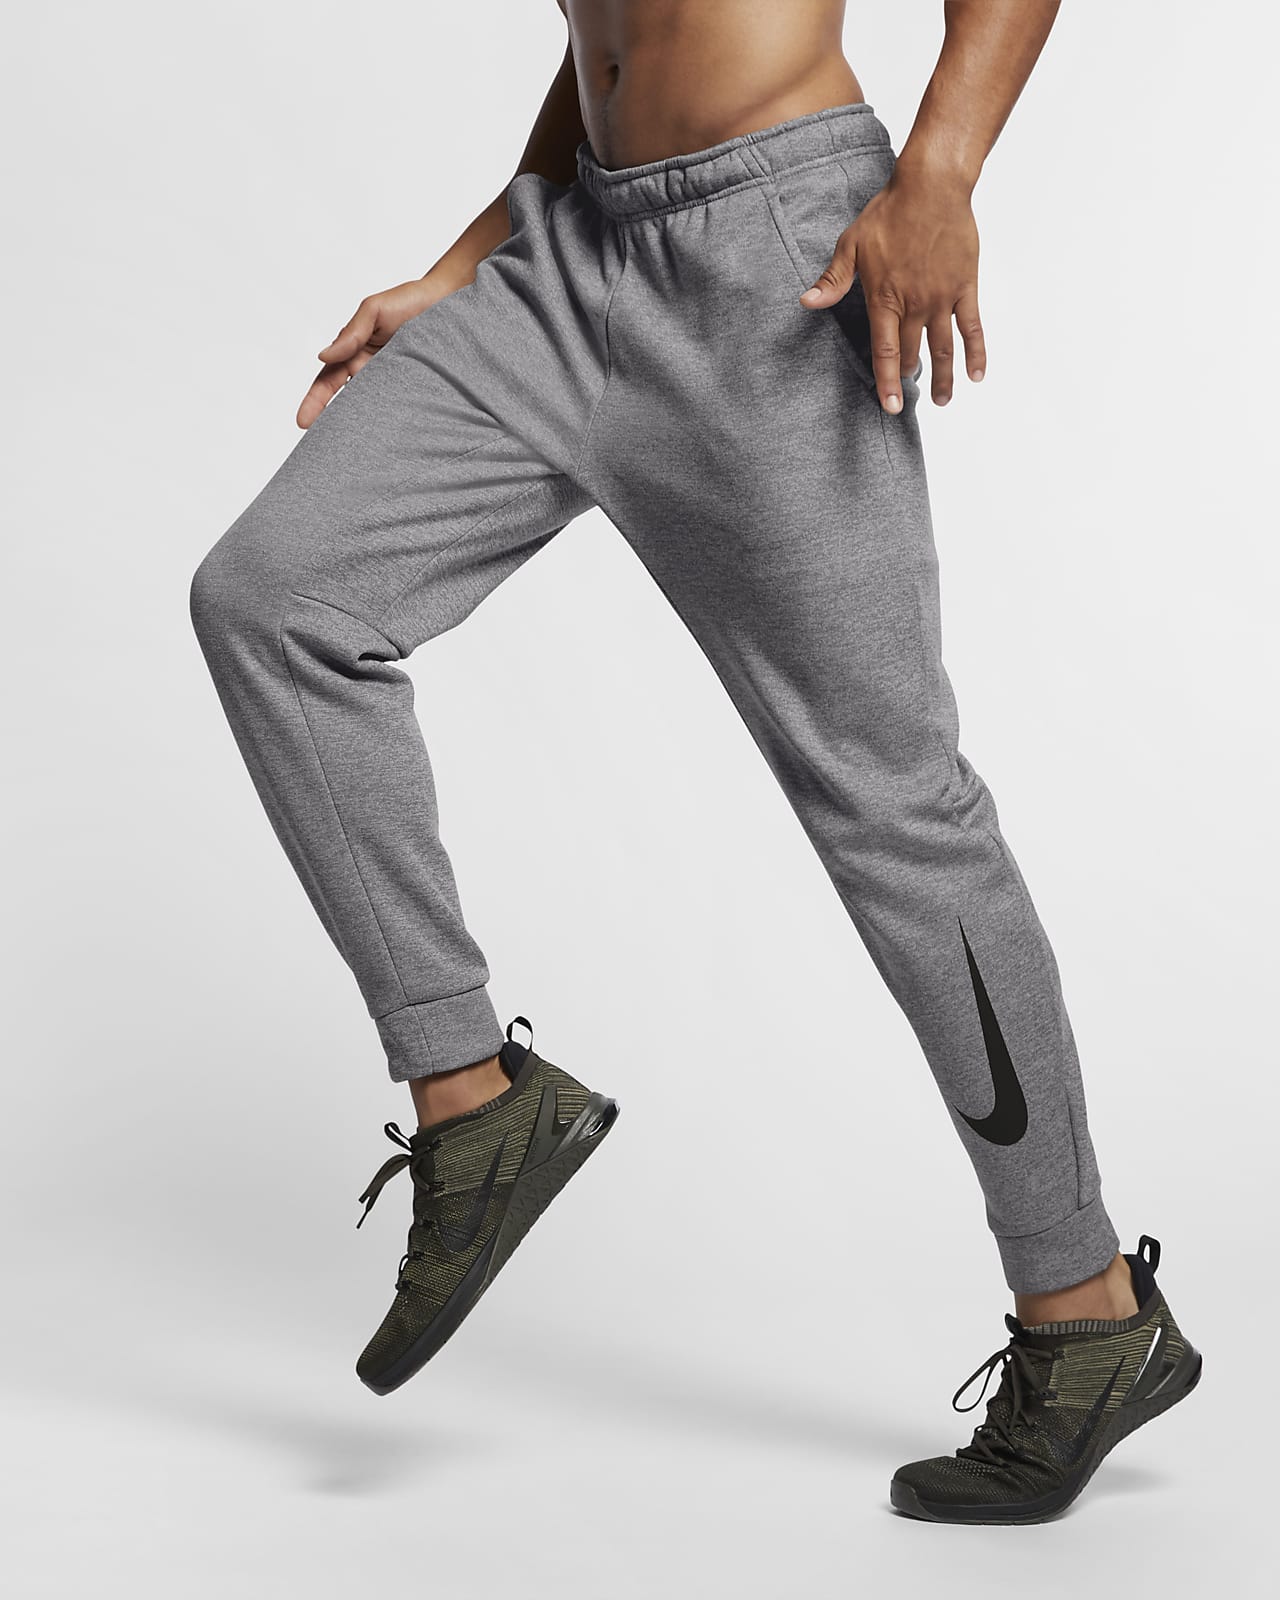 Pantalones de entrenamiento entallados para hombre Nike Therma.